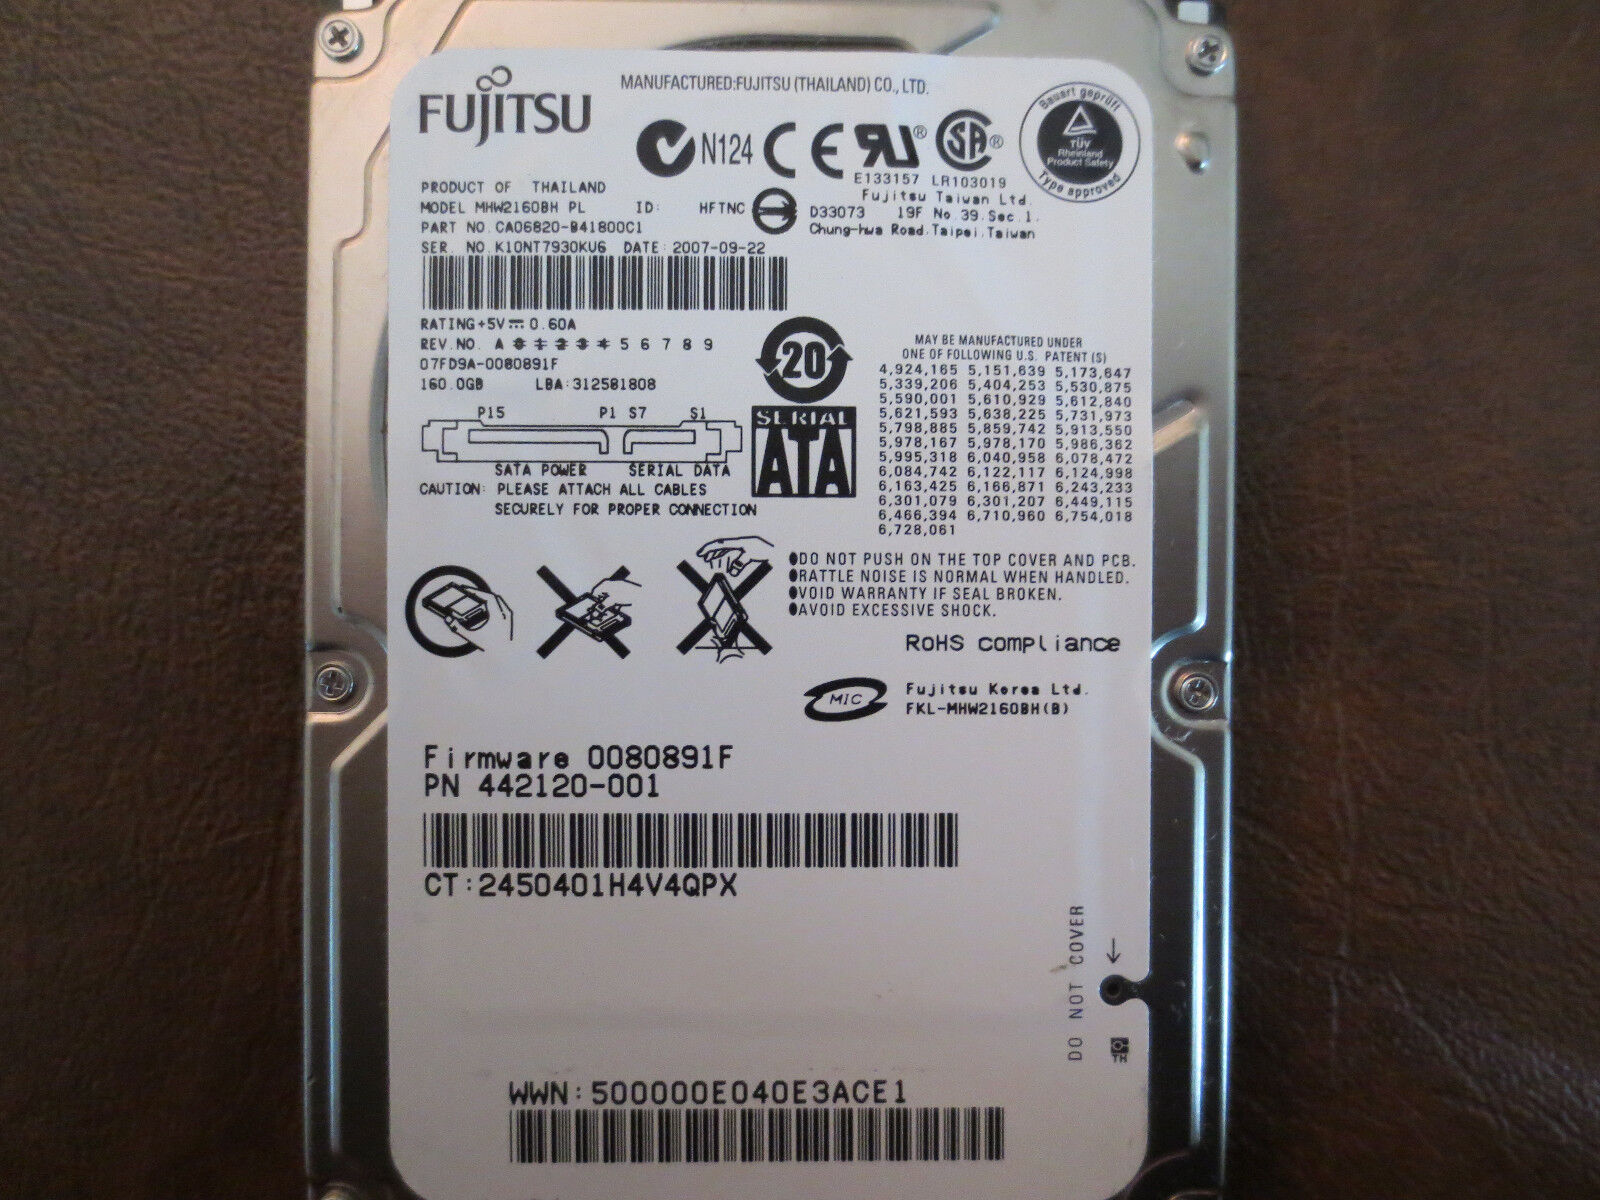 Fujitsu MHW2160BH PL (CA06820-B41800C1) 07FD9A-0080891F 160gb 2.5